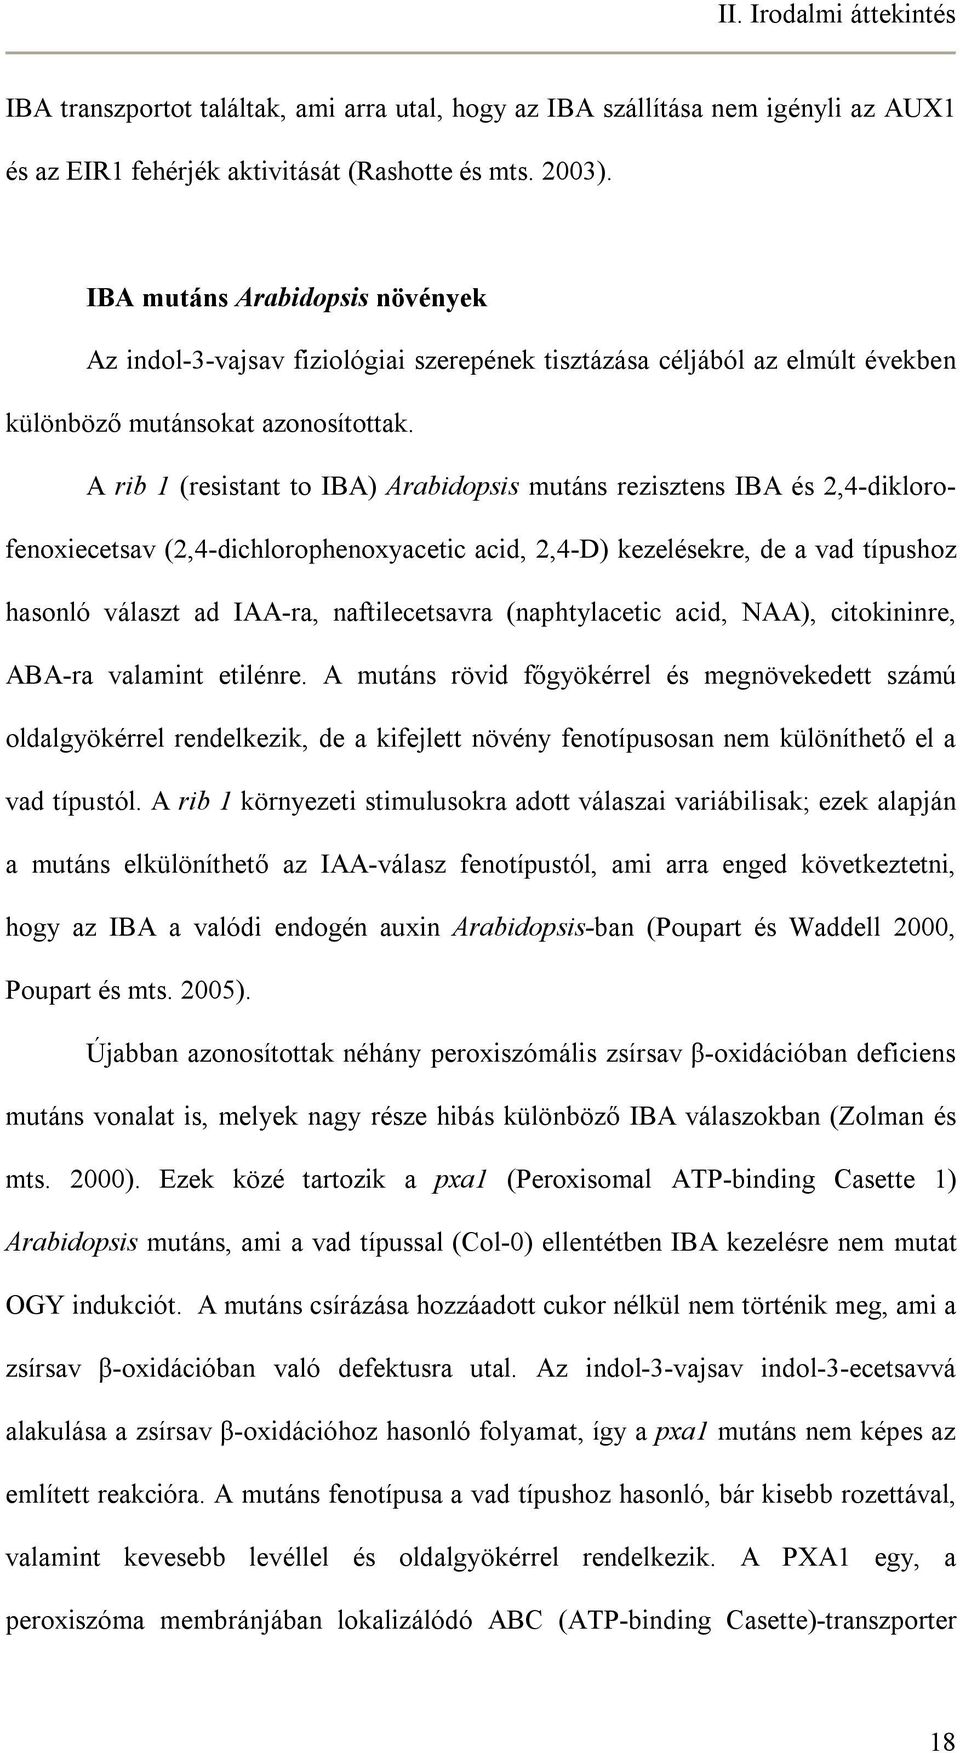 A rib 1 (resistant to IBA) Arabidopsis mutáns rezisztens IBA és 2,4-diklorofenoxiecetsav (2,4-dichlorophenoxyacetic acid, 2,4-D) kezelésekre, de a vad típushoz hasonló választ ad IAA-ra,